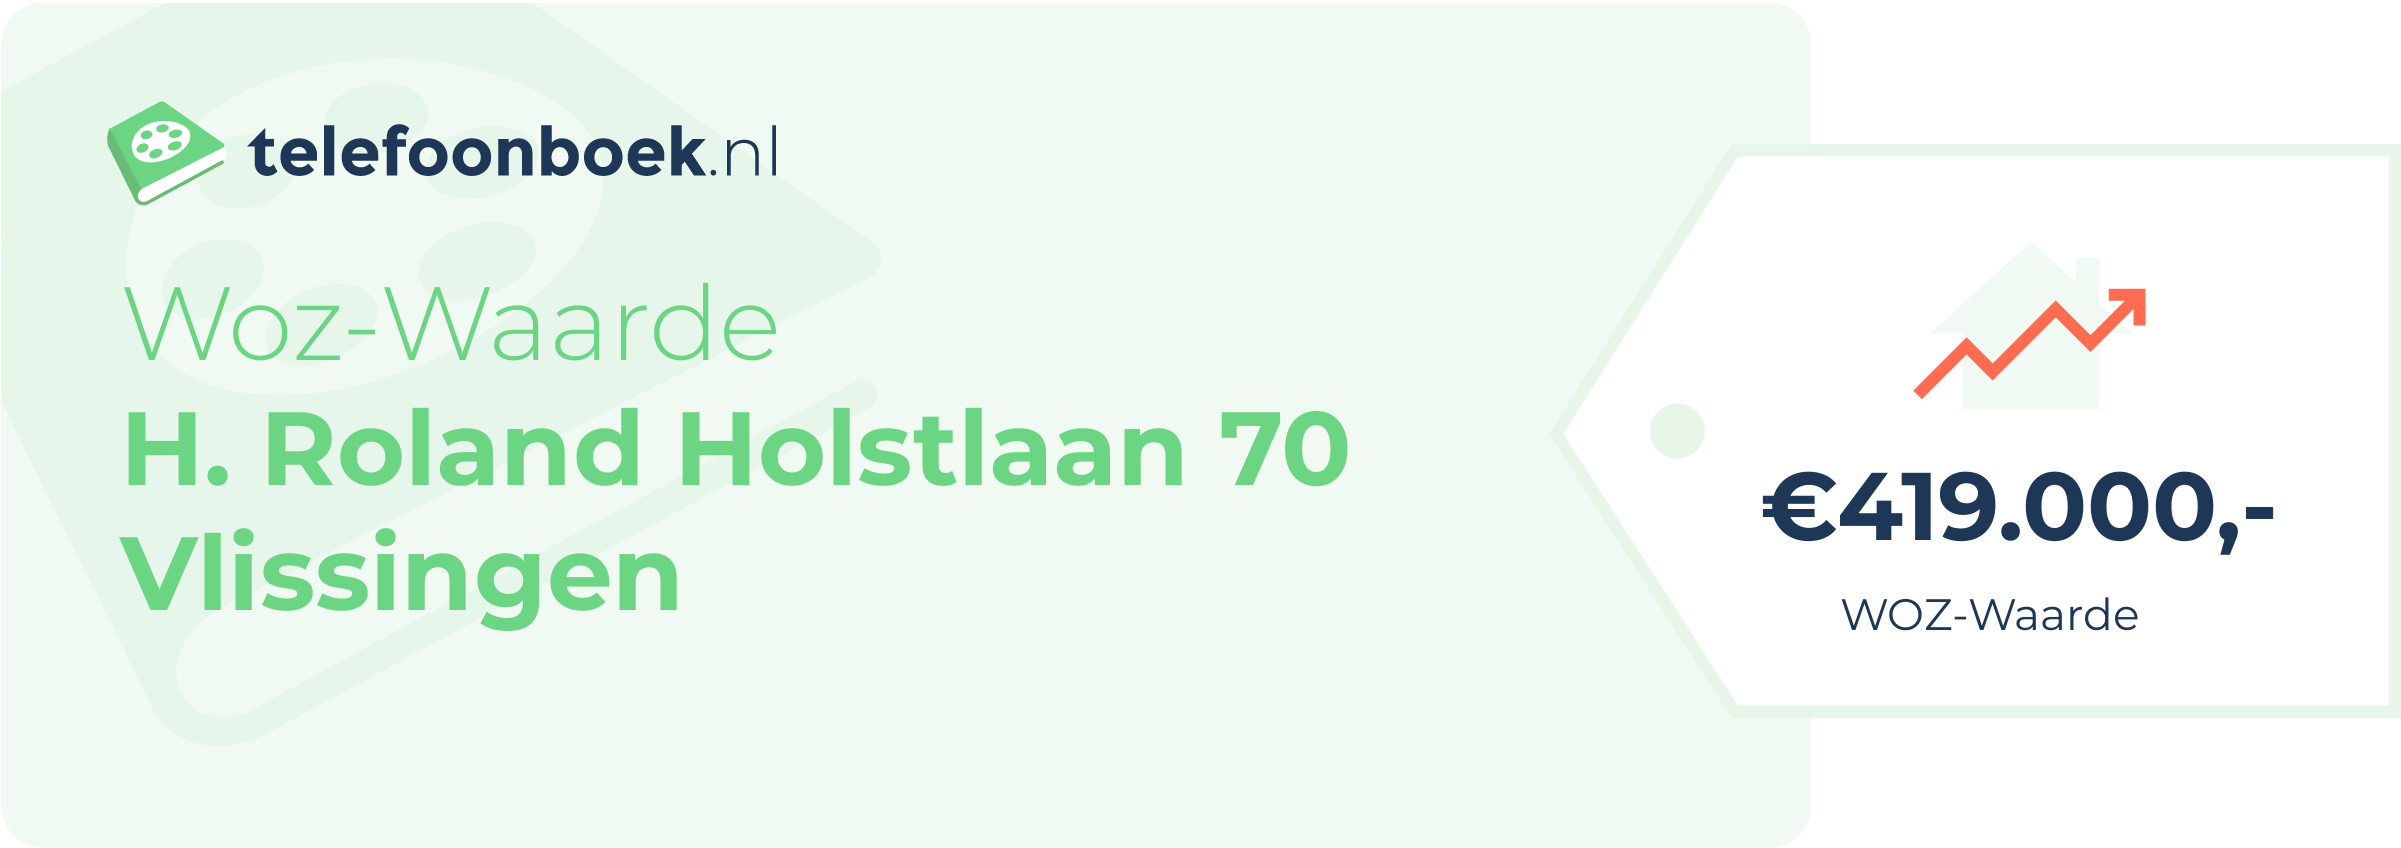 WOZ-waarde H. Roland Holstlaan 70 Vlissingen